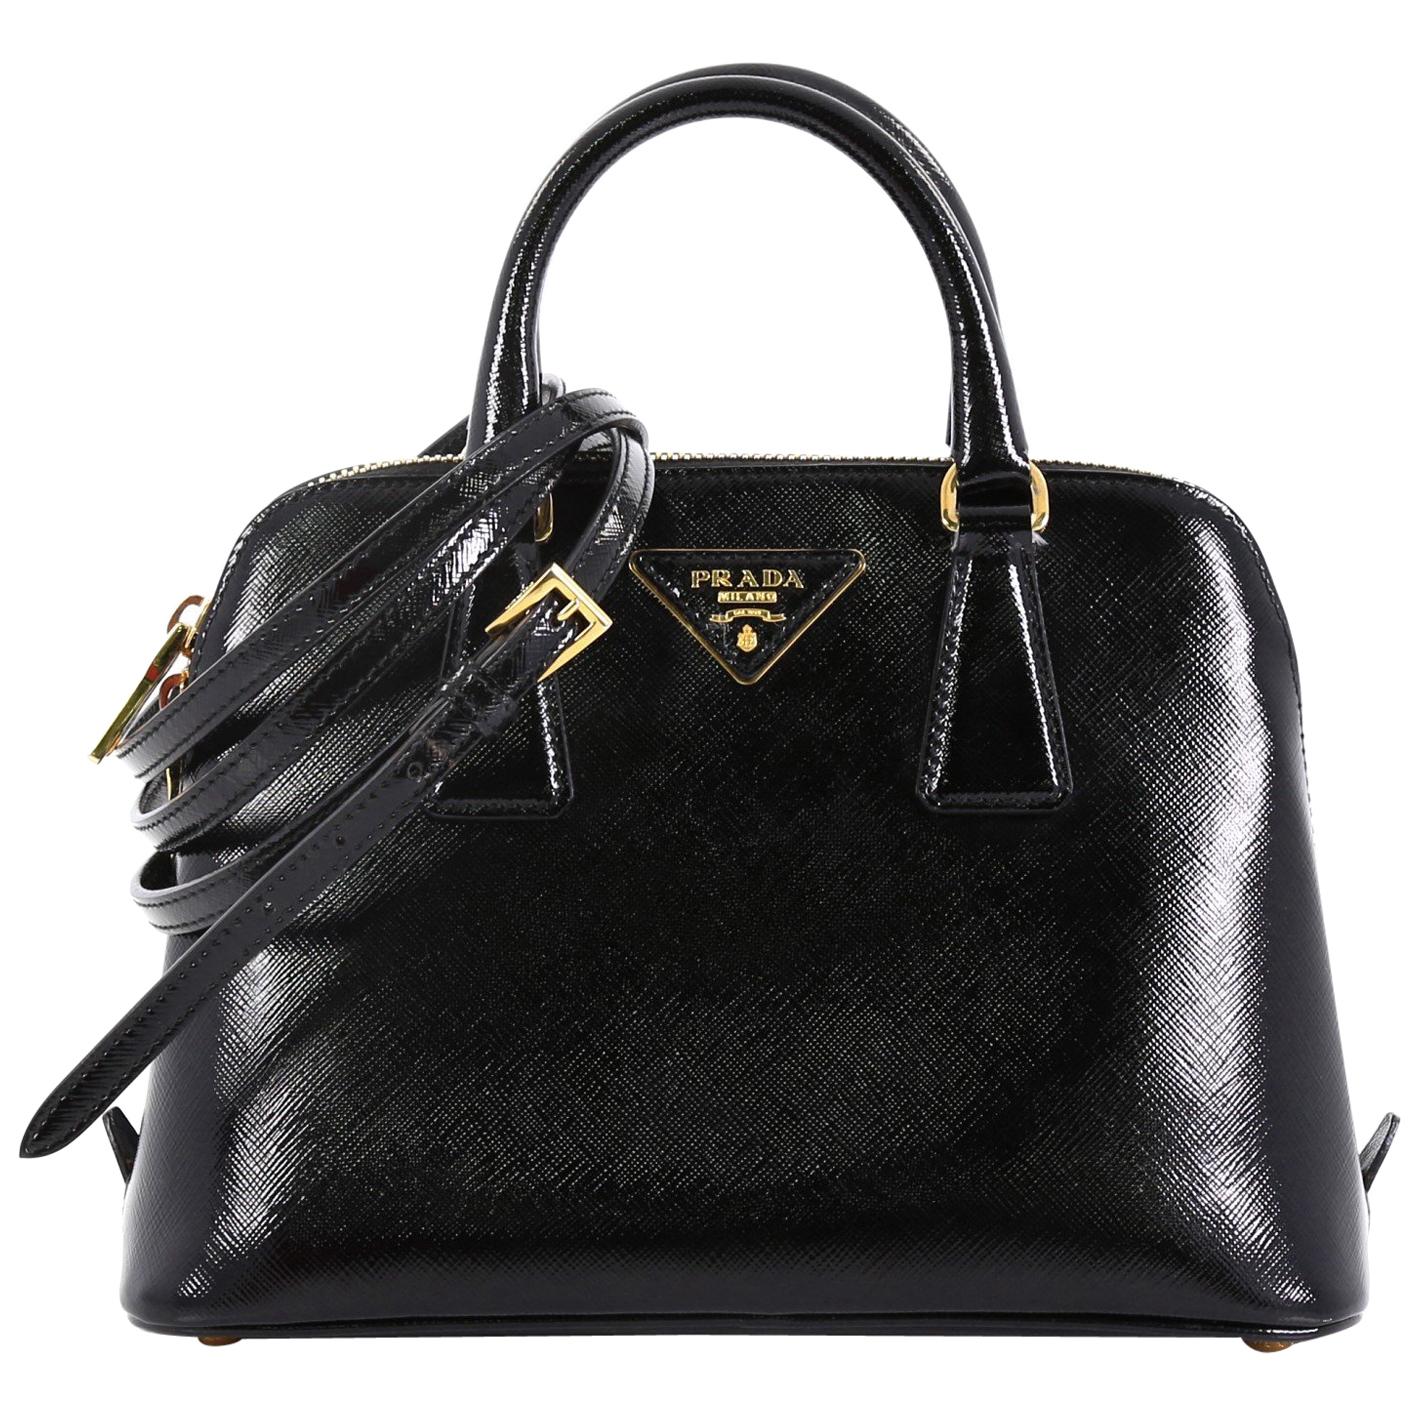 Prada Promenade Saffiano Leather Bag In Black